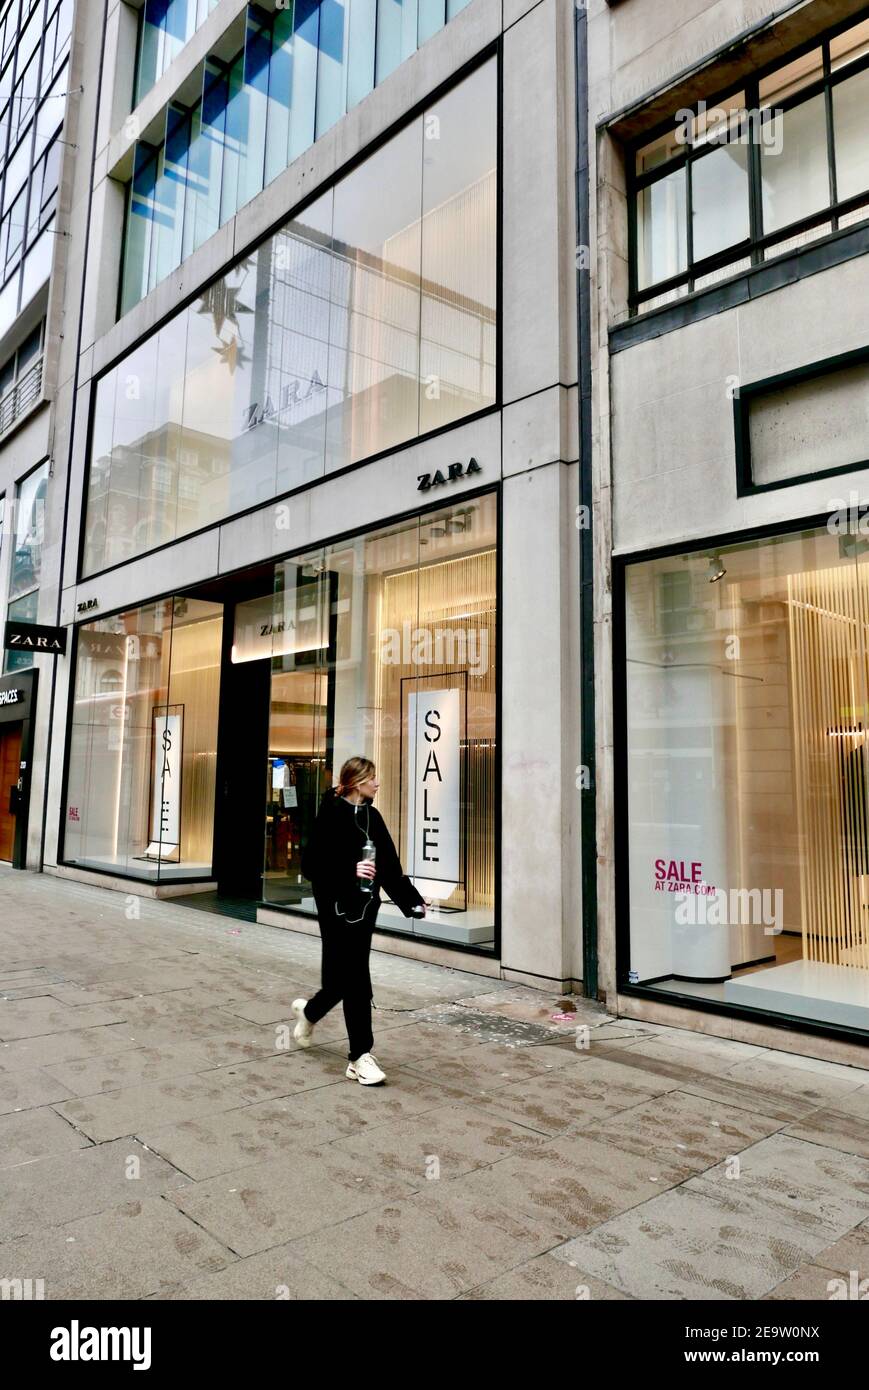 Una mujer joven pasa por la tienda de ropa Zara actualmente cerrada debido  al cierre de la pandemia de covid19 que está afectando a la economía.  Regent Street, Londres, Reino Unido Fotografía